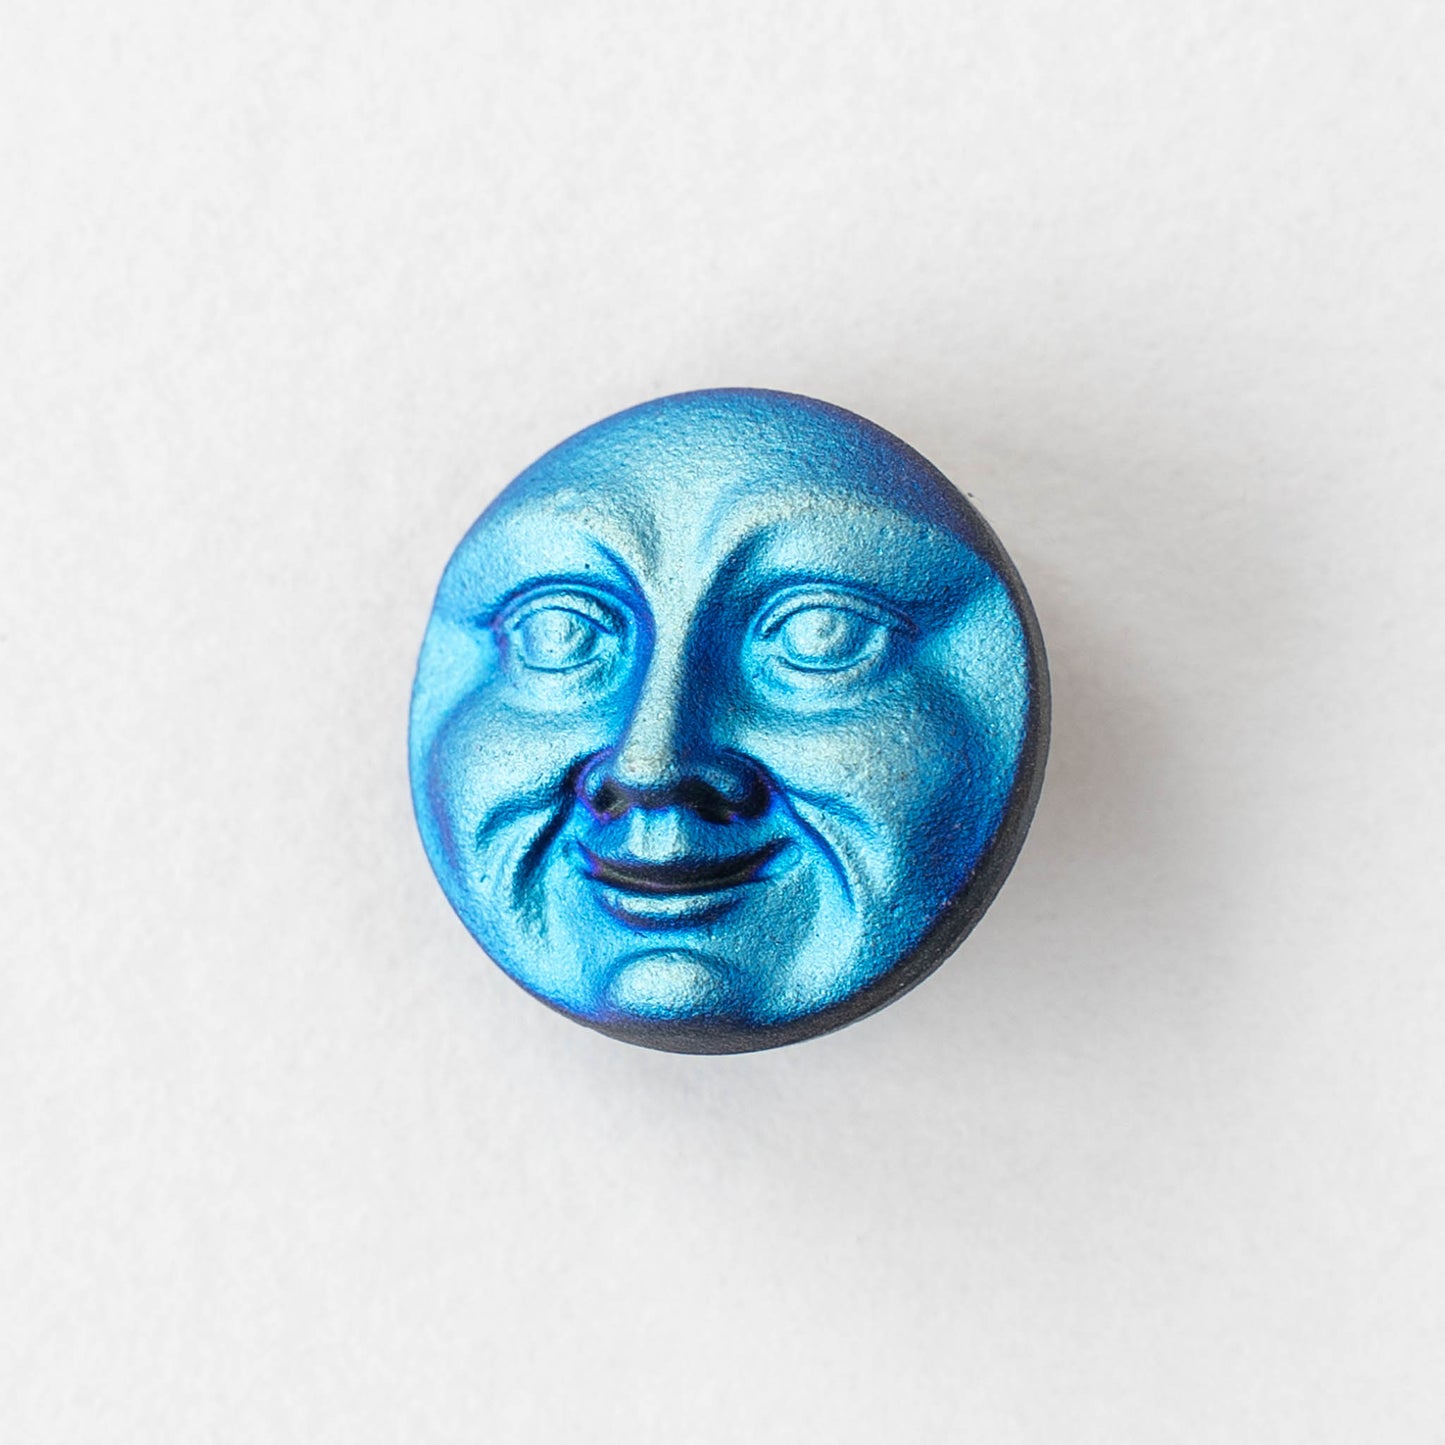 18mm Moon Face Buttons - Blue Green Matte - 1 Button